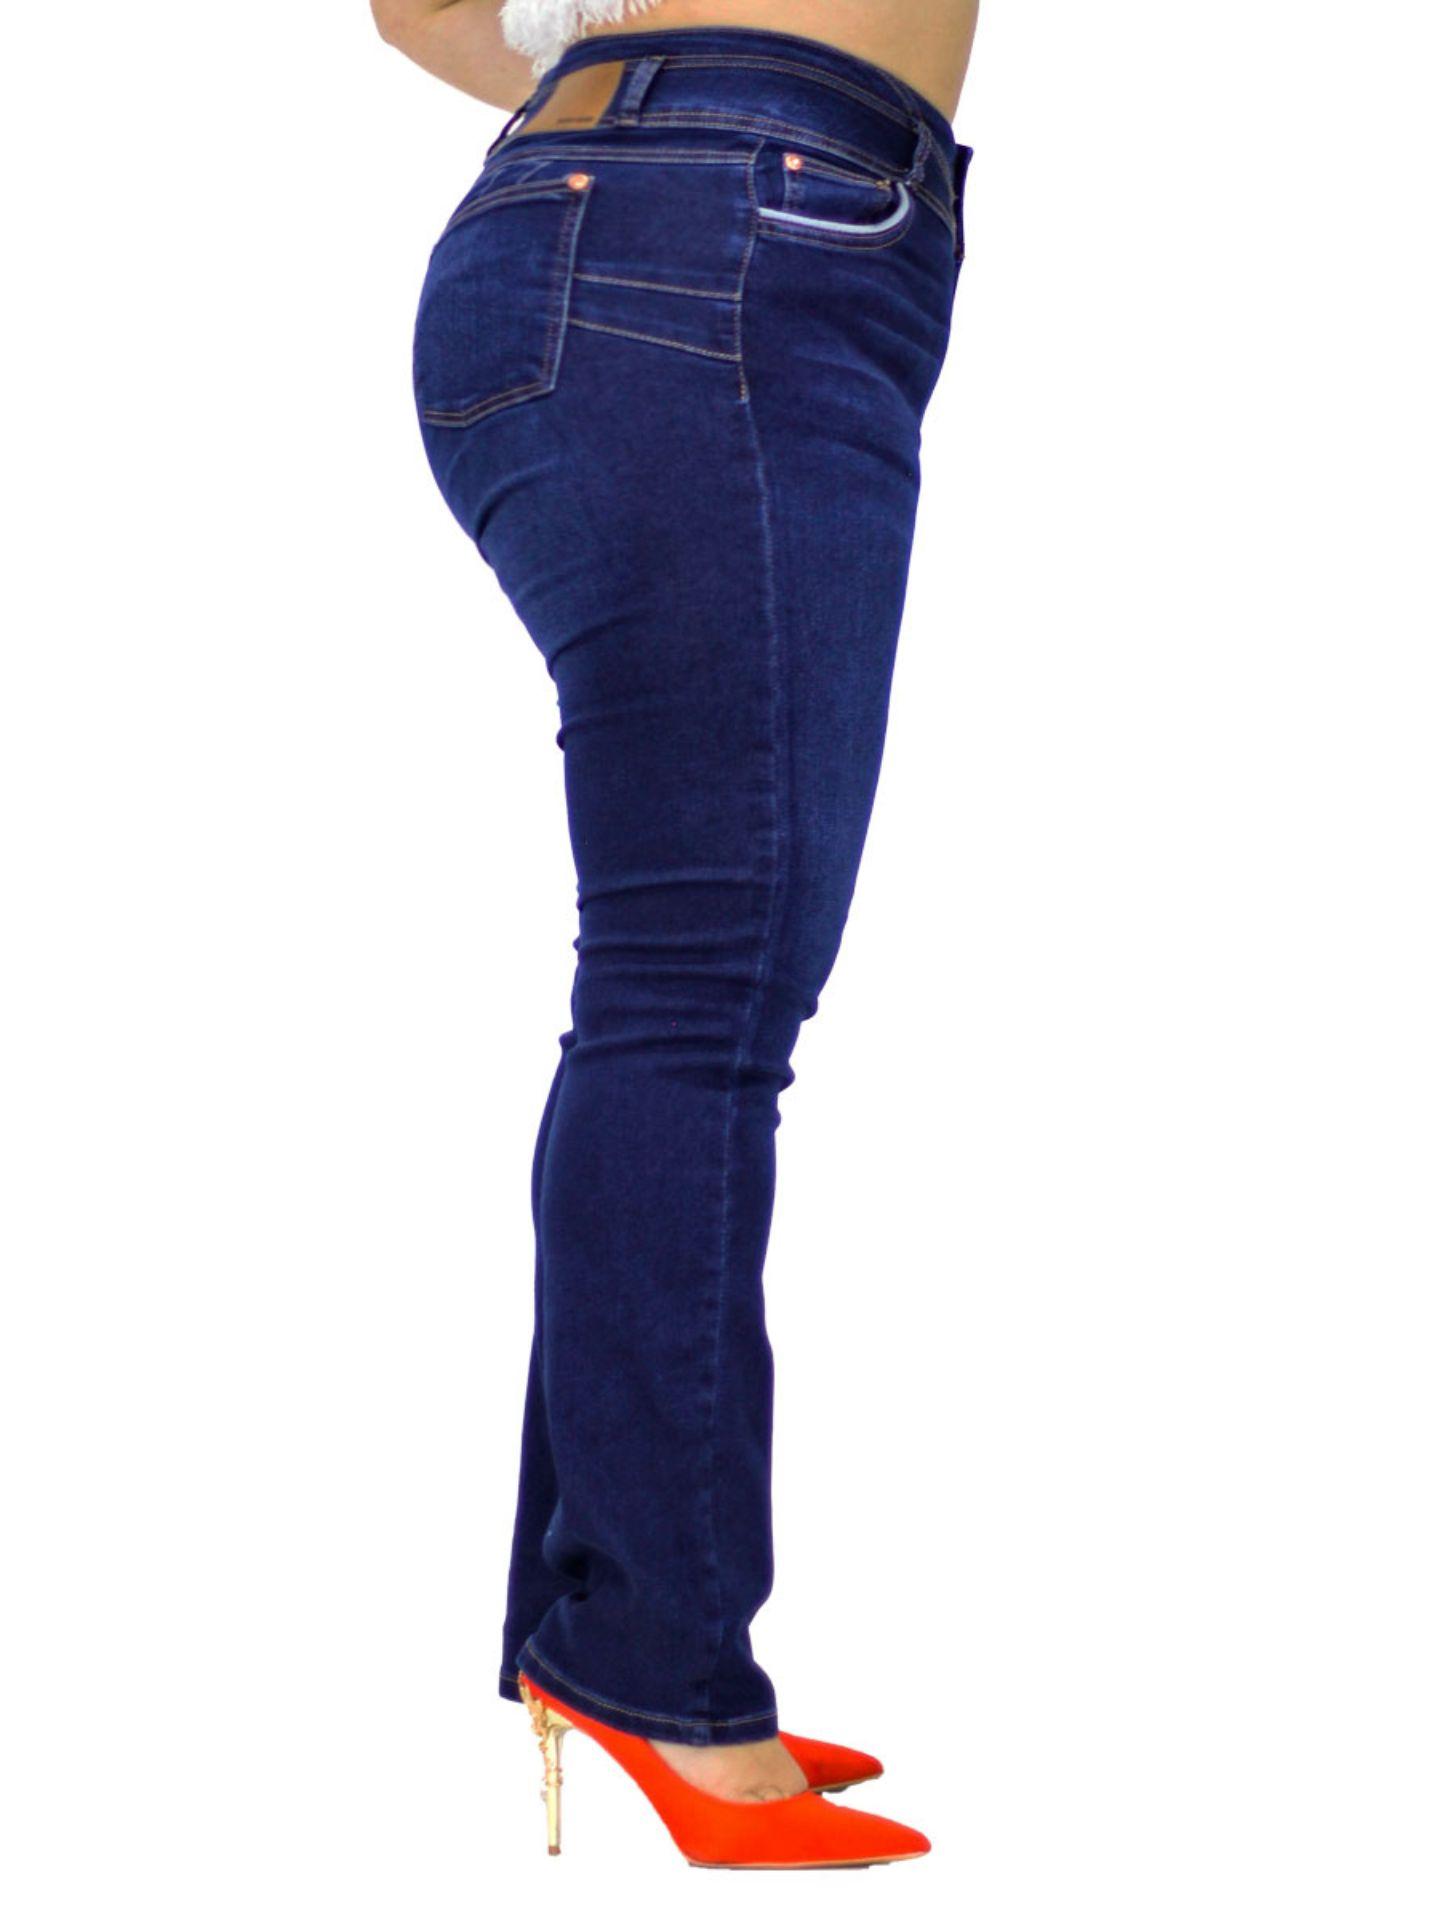 Jeans Magic Cintura Alta Recto / color azul oscuro